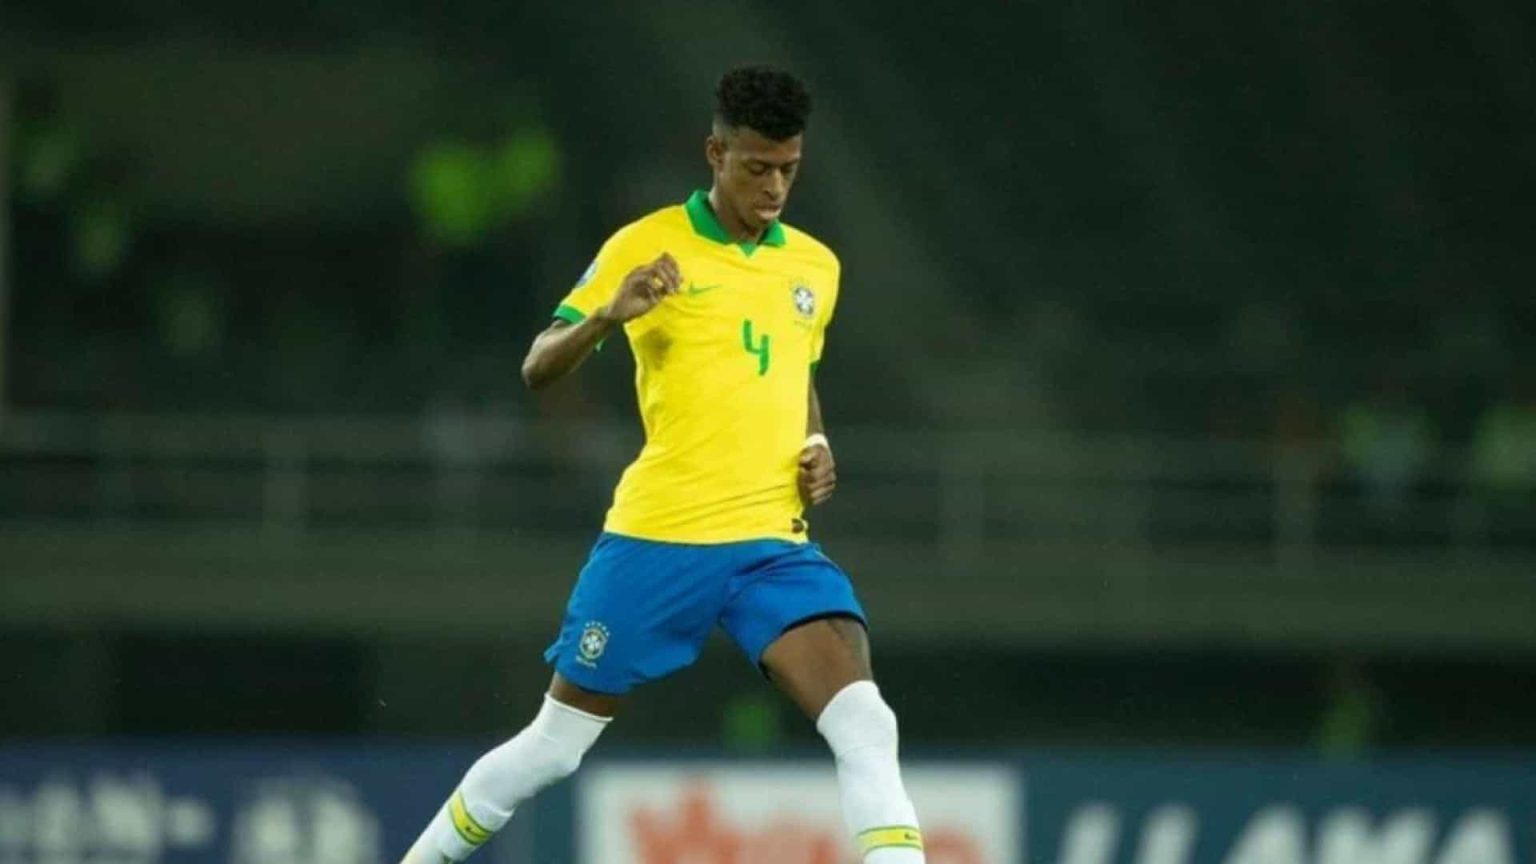 Robson Bambu veste a 3 do Corinthians e quer resgatar a alegria: 'Desafio grande'